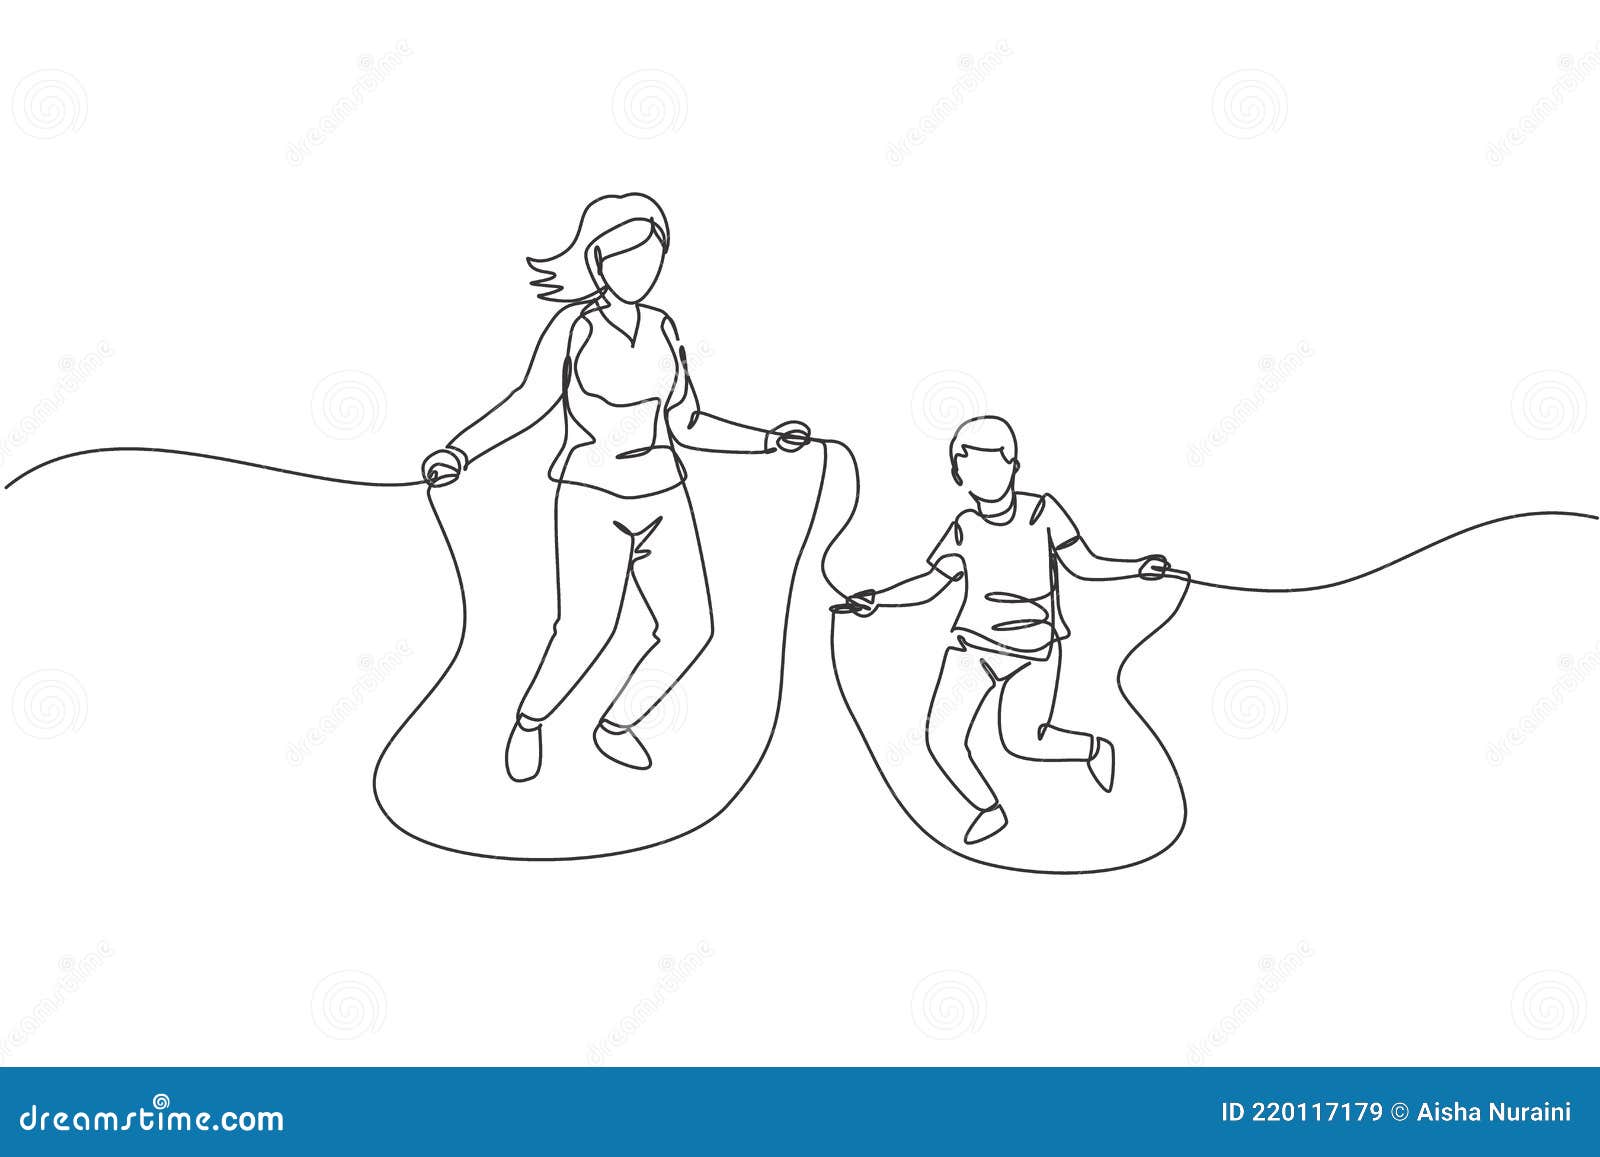 desenho de uma linha contínua menina feliz e menino pulando juntos